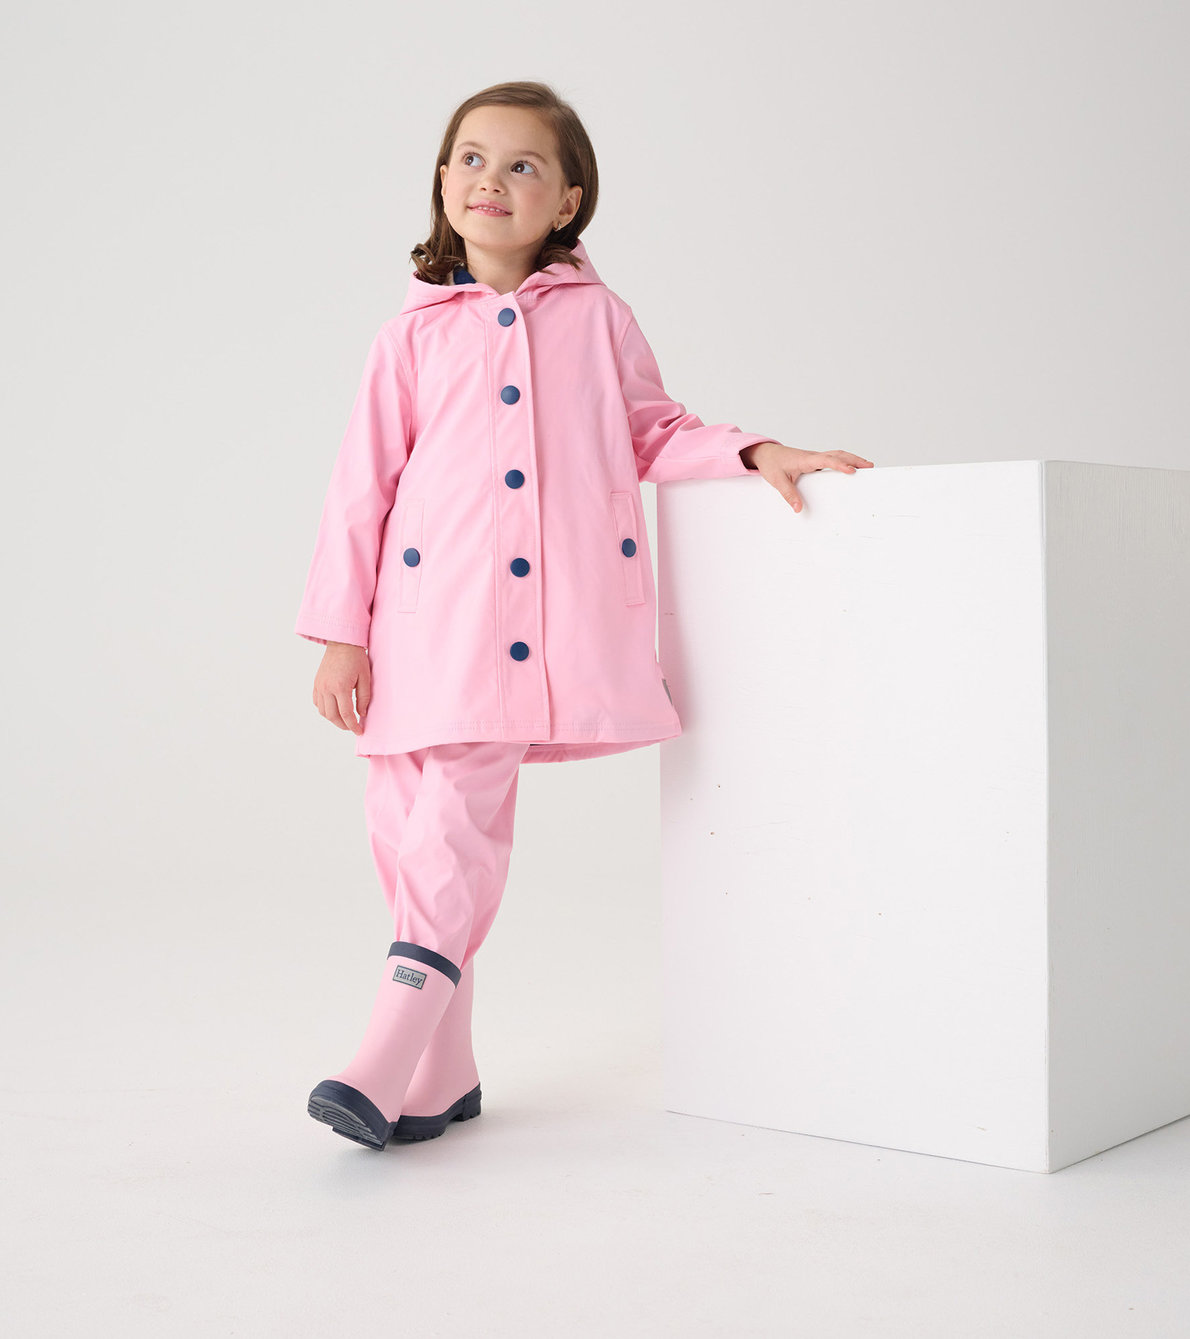 Agrandir l'image de Manteau de pluie classique pour enfant – Rose et rayures bleu marine